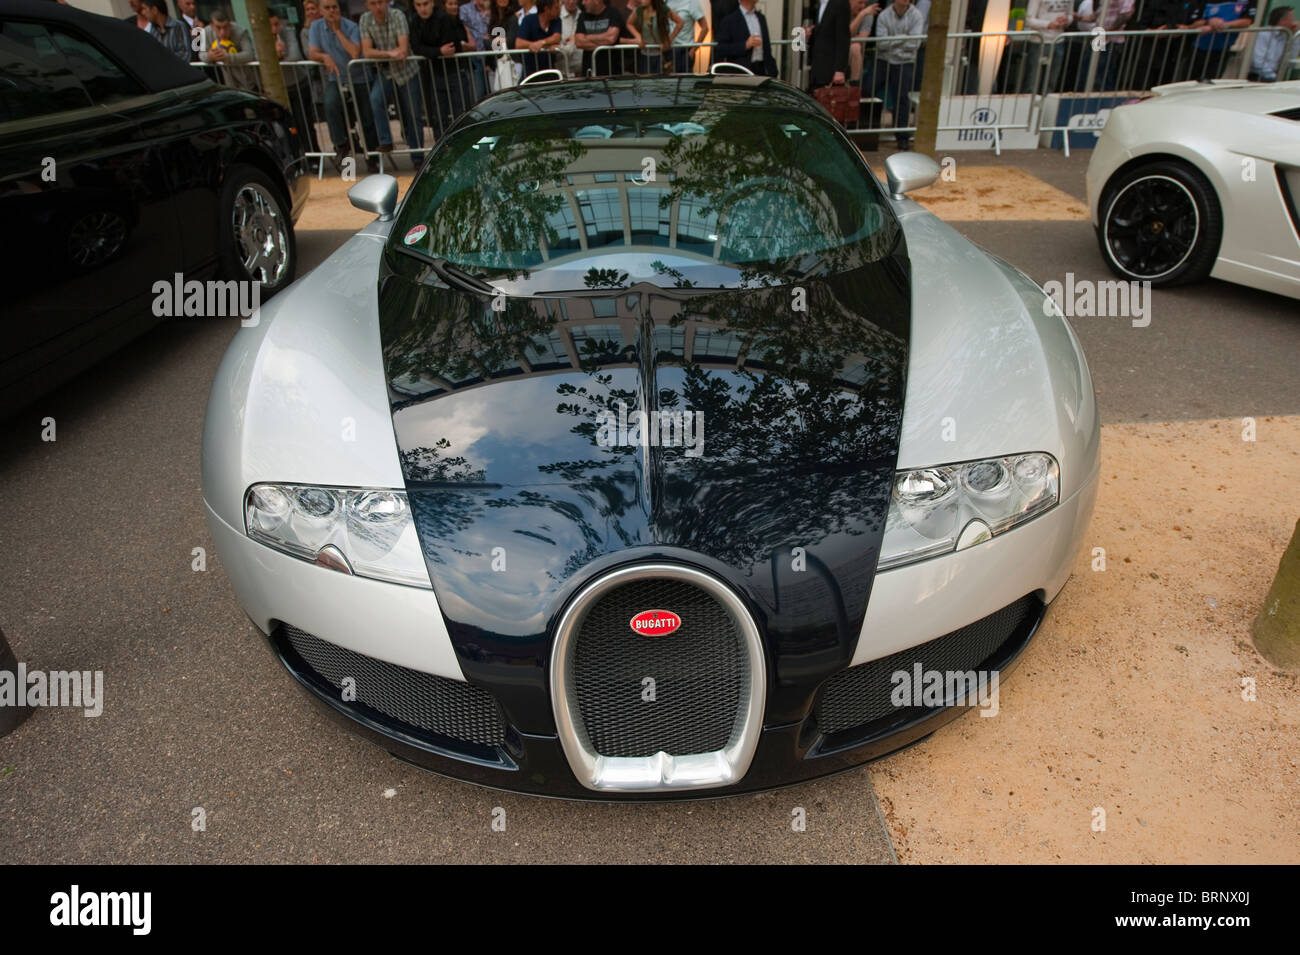 Bugatti Veyron 16.4 Super Sports Car nero argento Foto Stock